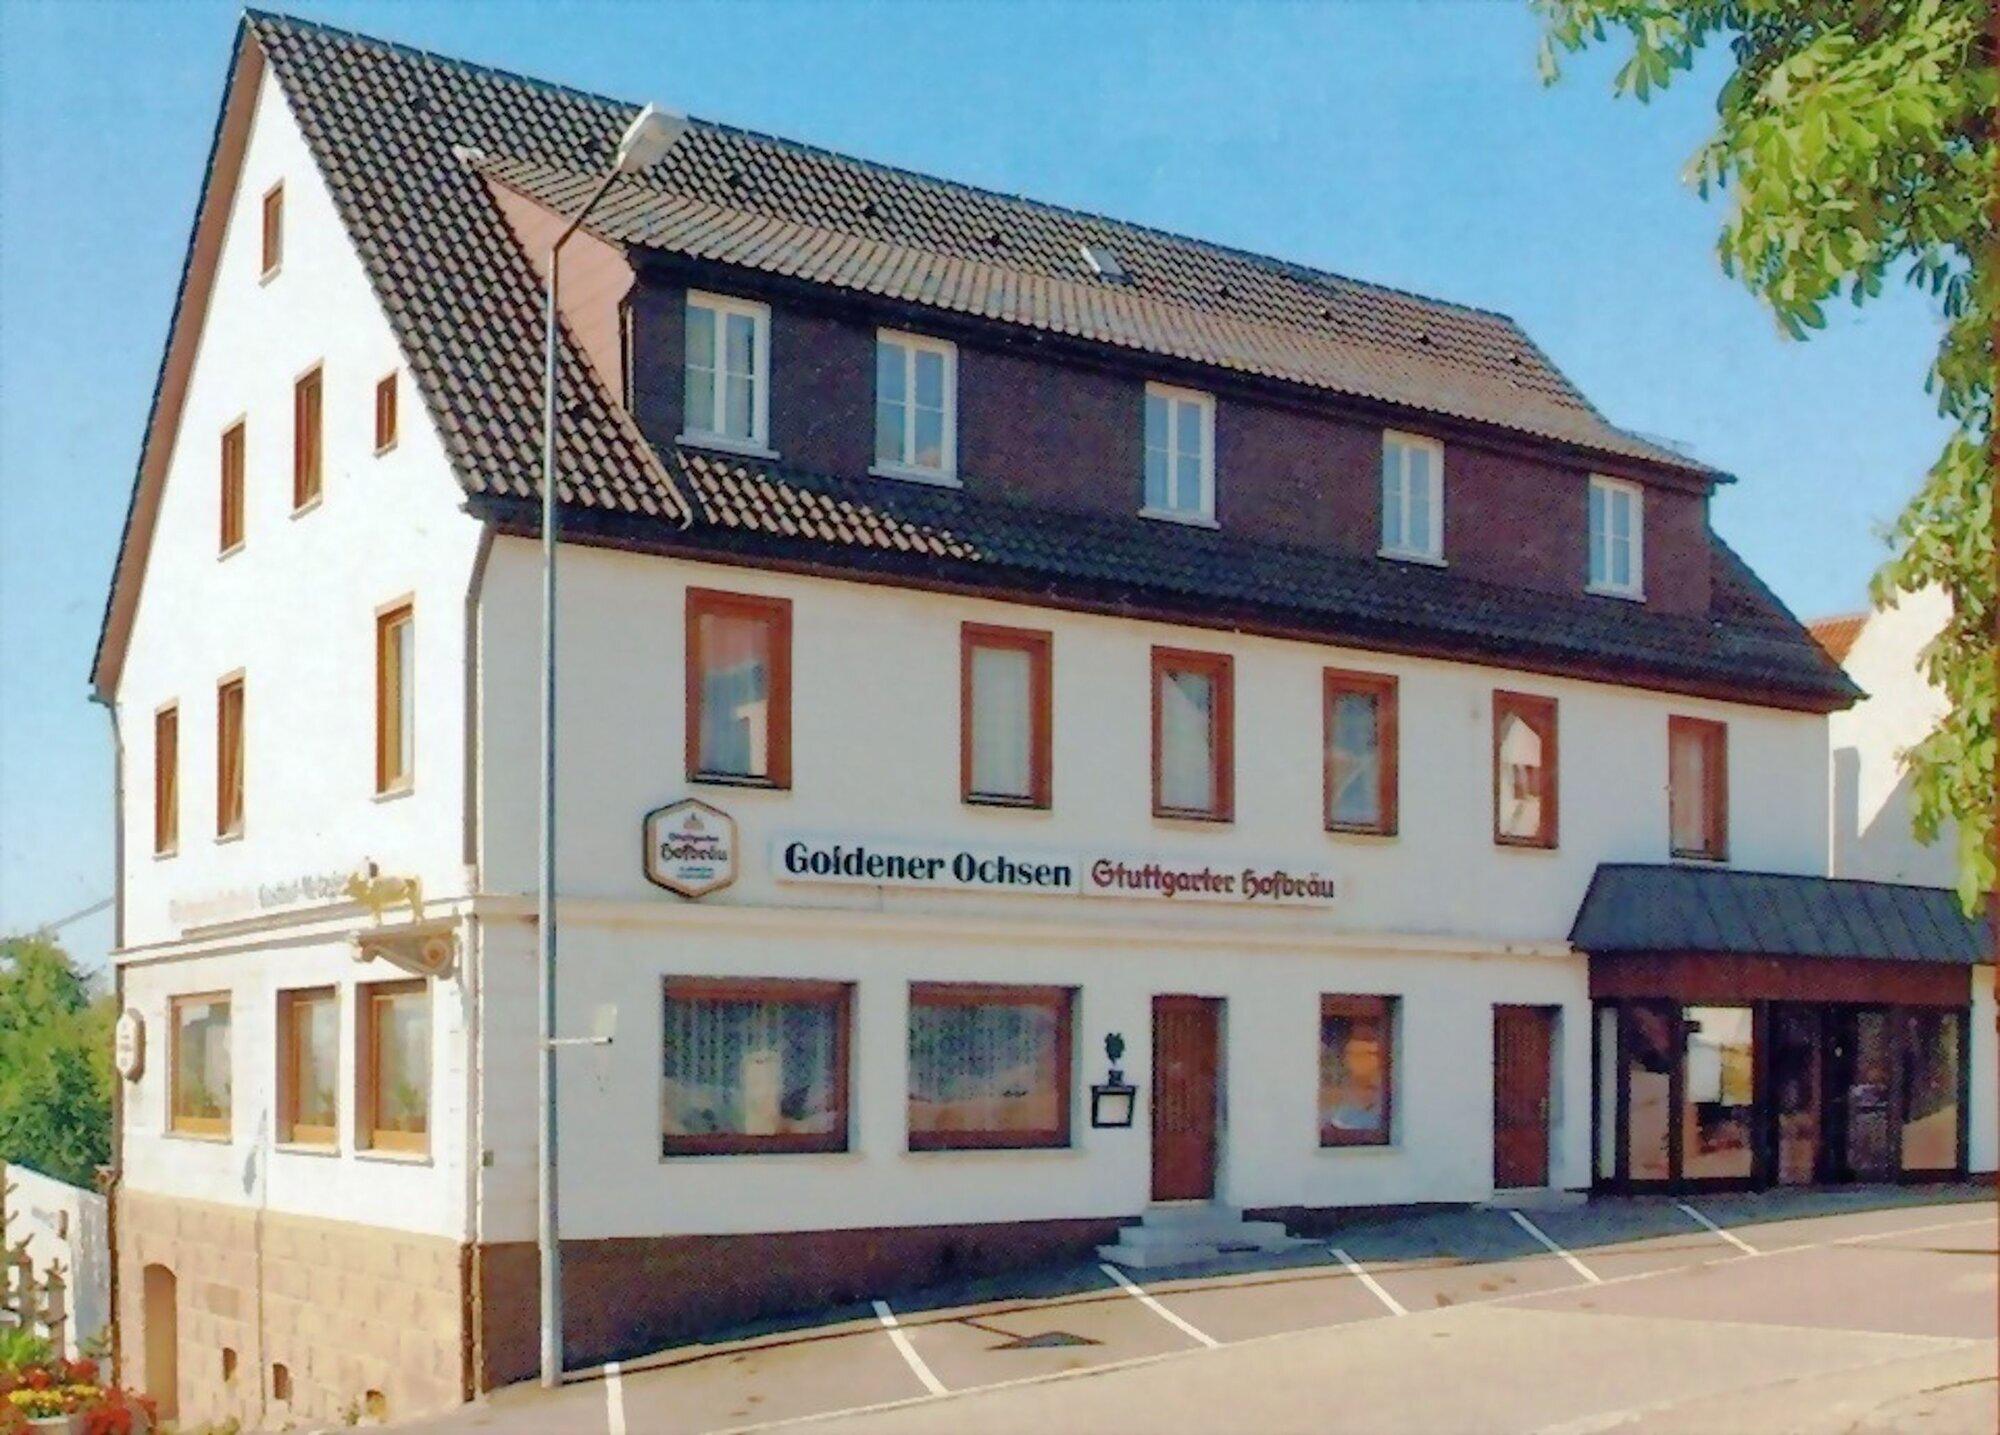 Hotel Goldener Ochsen Göppingen Hohenstaufen, Ailstraße 1 in Göppingen